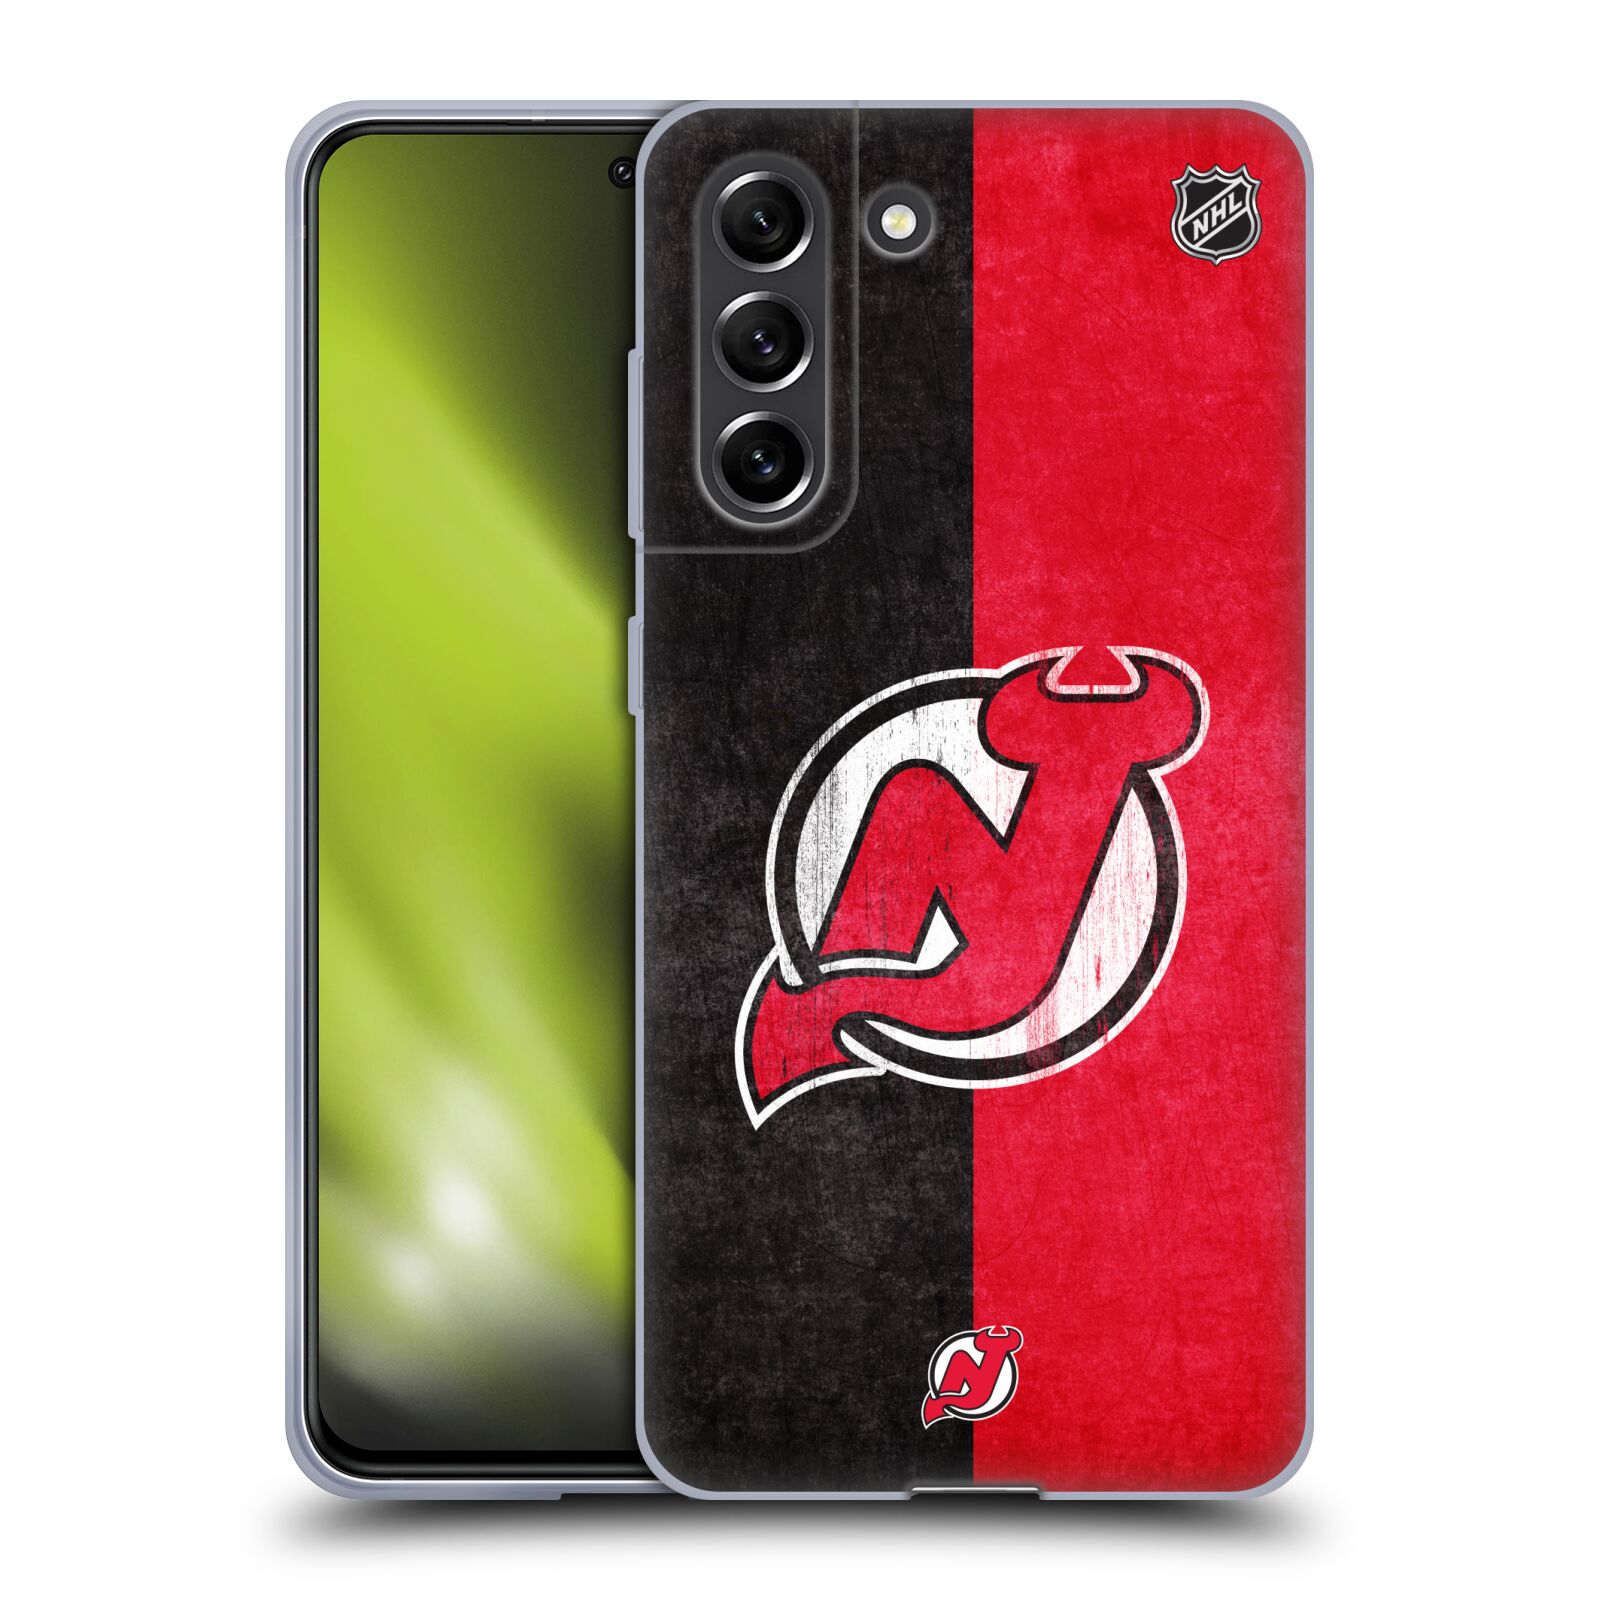 Silikonové pouzdro na mobil Samsung Galaxy S21 FE 5G - NHL - Půlené logo New Jersey Devils (Silikonový kryt, obal, pouzdro na mobilní telefon Samsung Galaxy S21 FE 5G s licencovaným motivem NHL - Půlené logo New Jersey Devils)